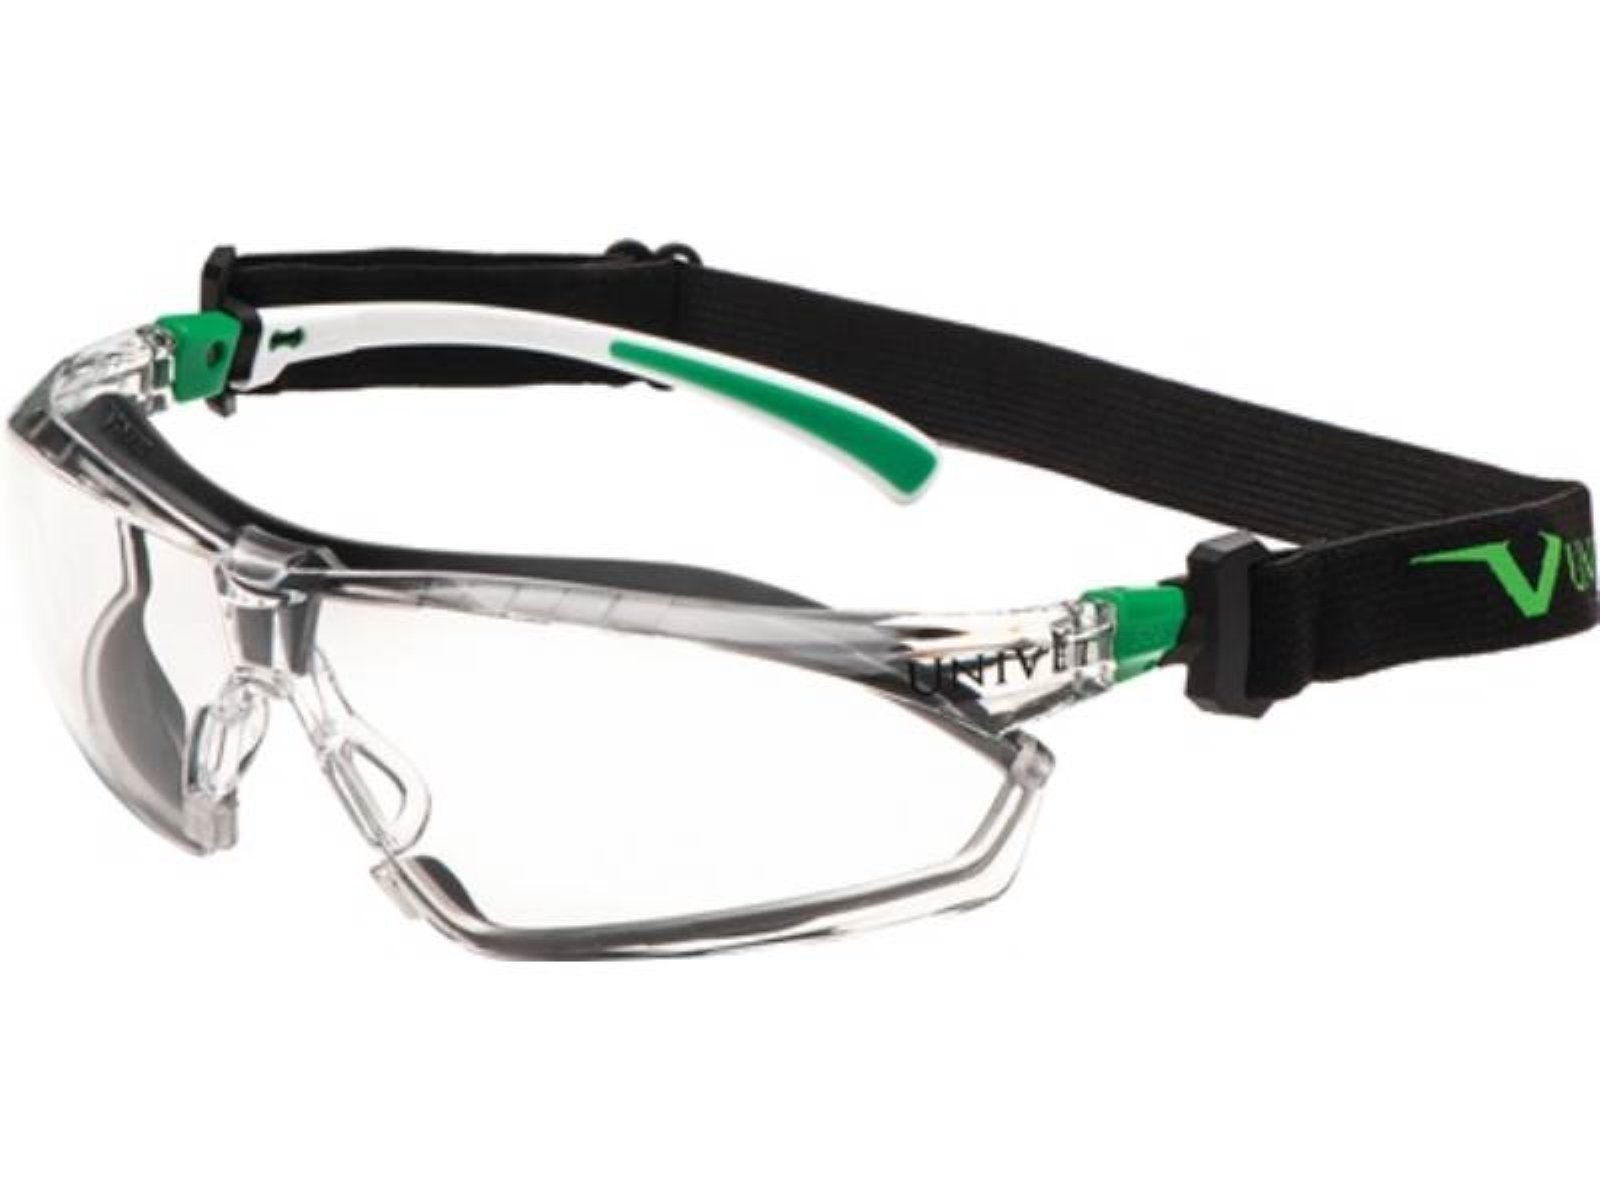 Univet Arbeitsschutzbrille Schutzbrille 506 UP 170 166,EN weiß Bügel kl grün,Scheibe EN Hybrid